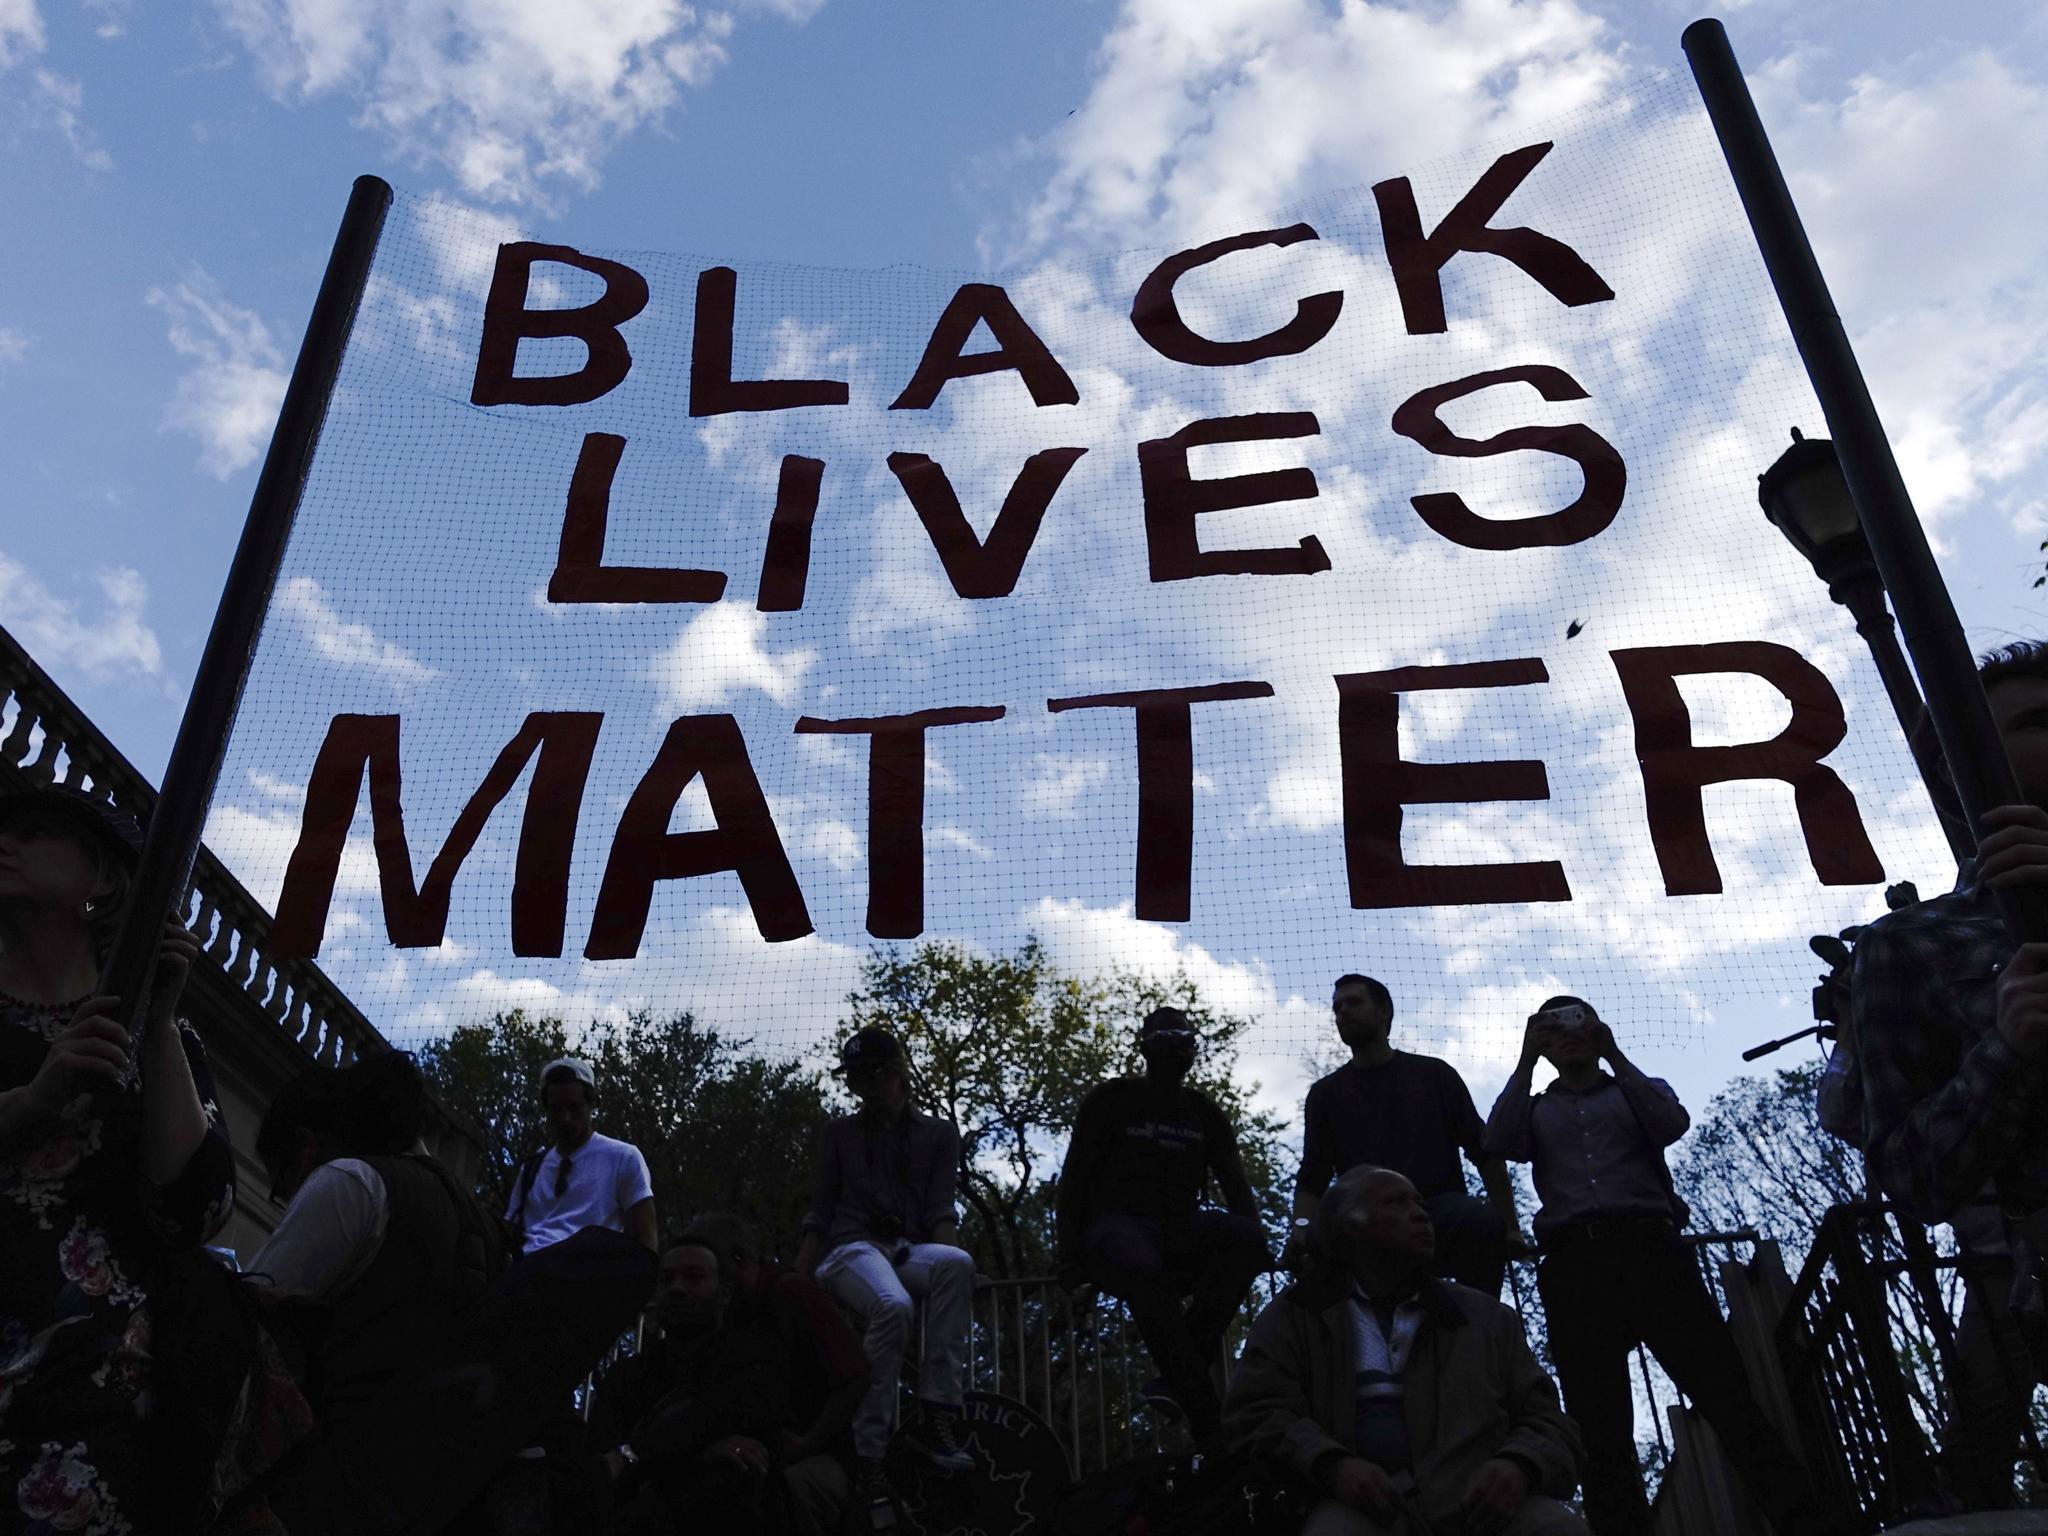 President Barack Obama rejects petition to designate Black Lives